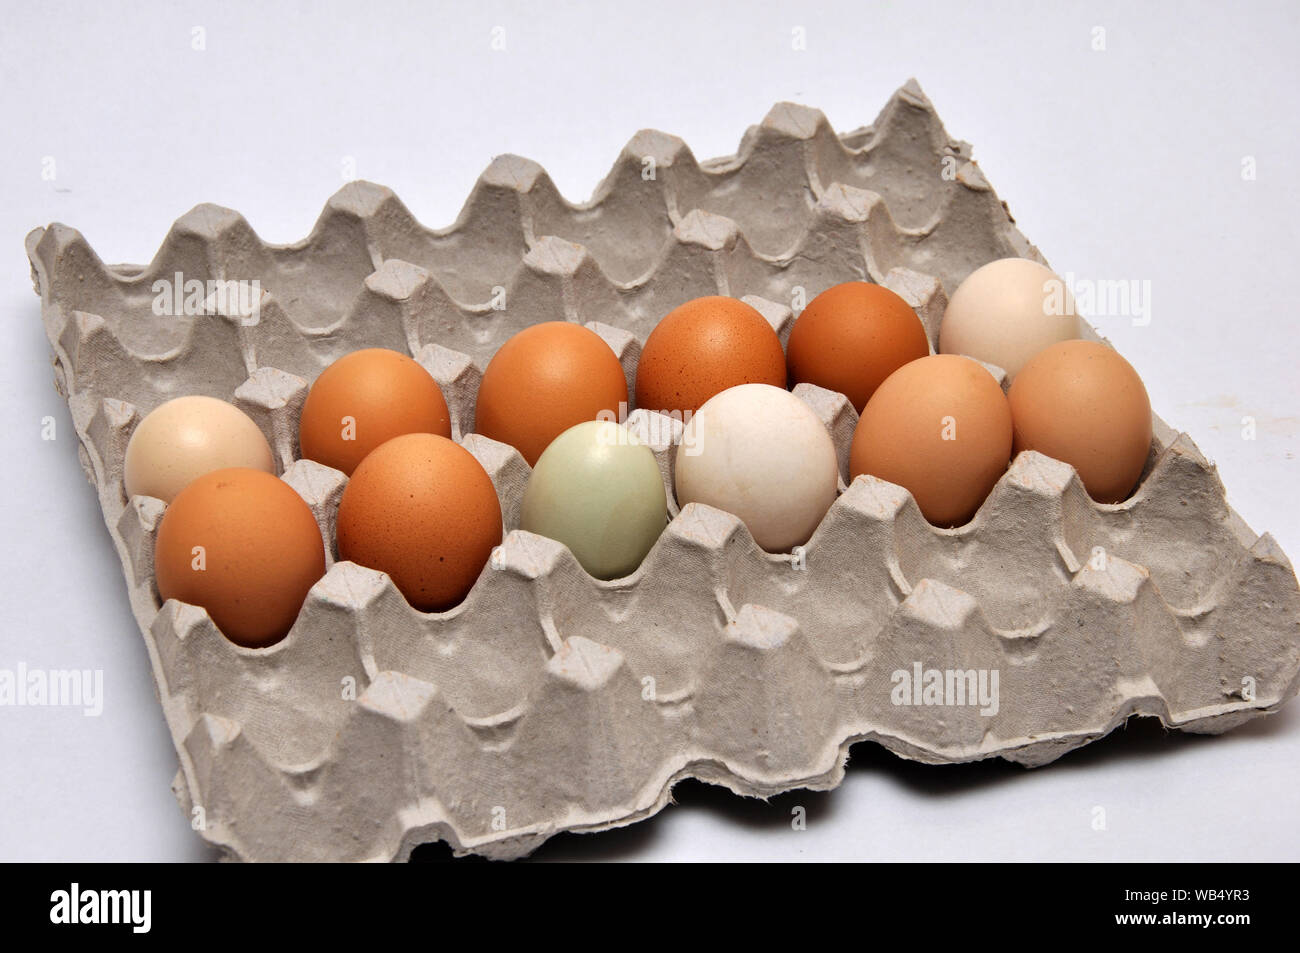 a dozen fresh farm eggs on a seamless background Stock Photo